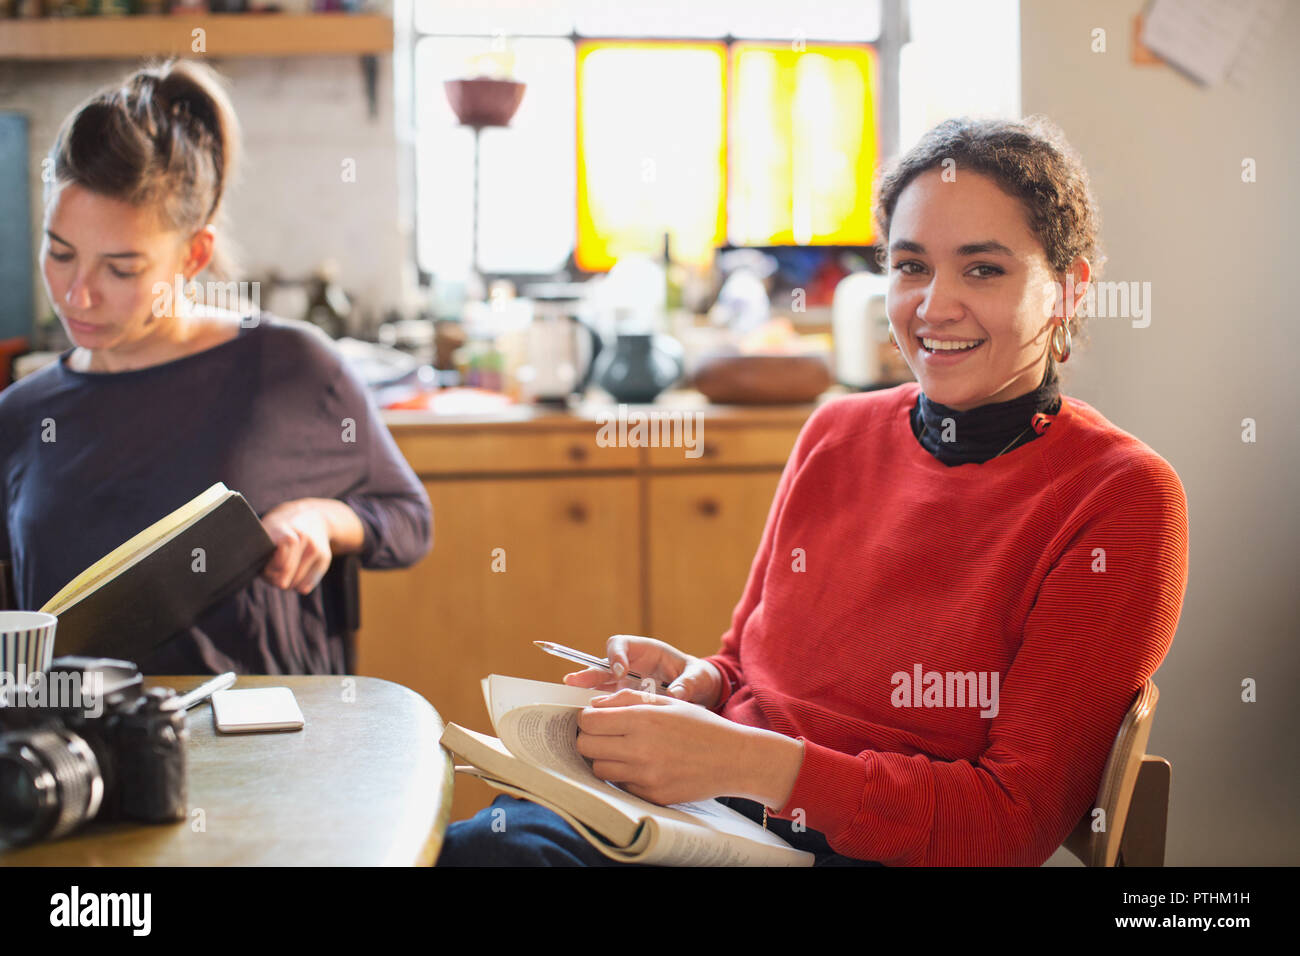 Portrait lächelnd weibliche Studenten studieren an einem Küchentisch in der Wohnung Stockfoto